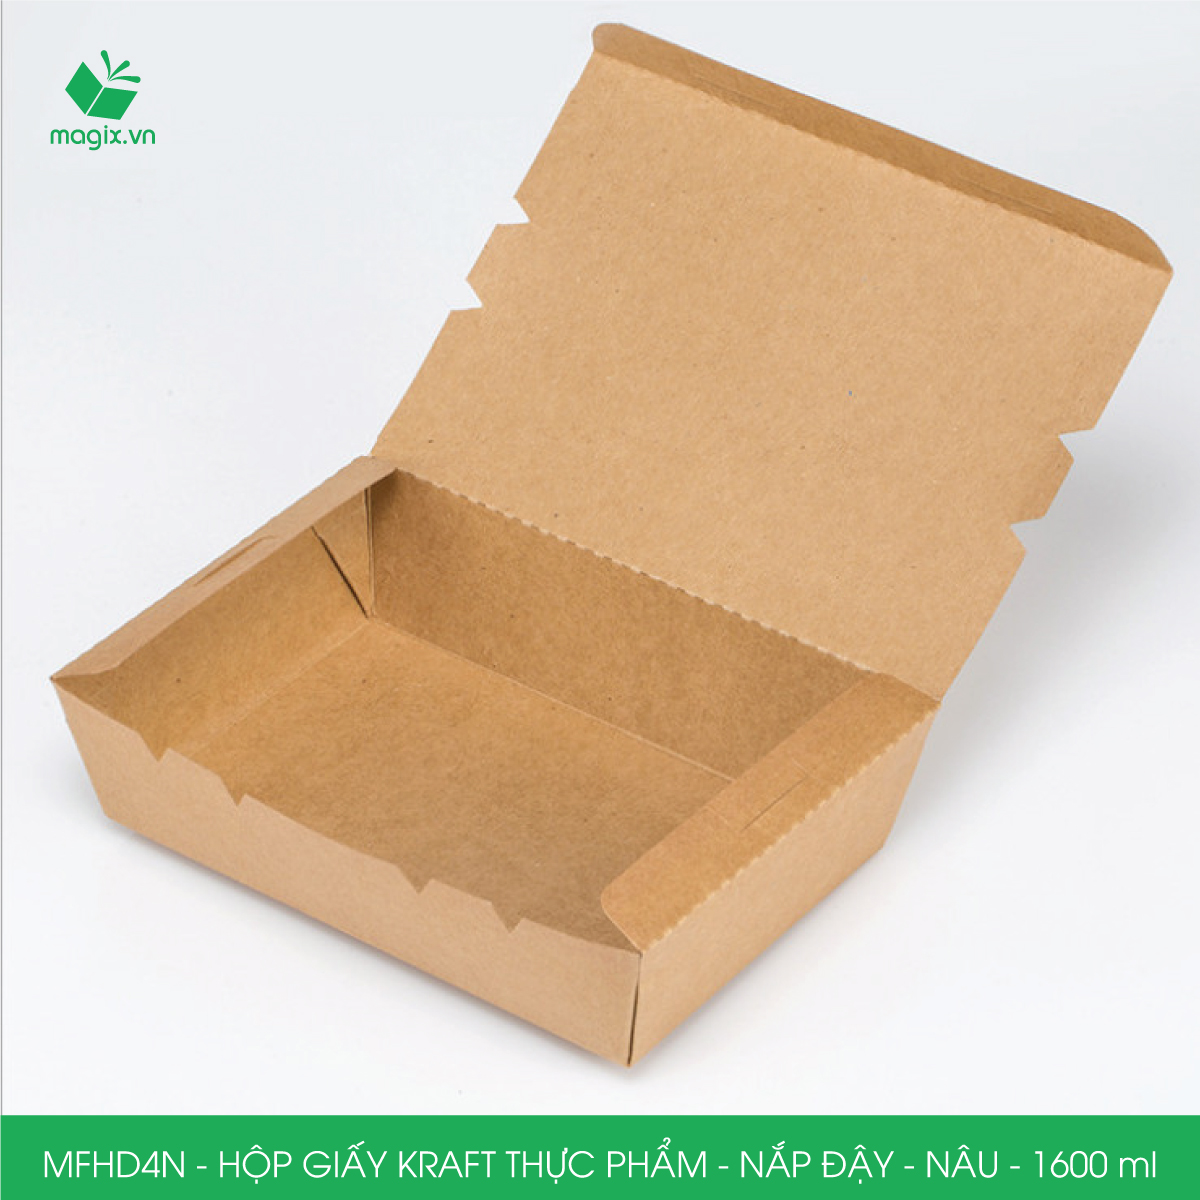 MFHD4N - Combo 25 hộp giấy kraft thực phẩm 1600ml, hộp đựng thức ăn nắp đậy màu nâu, hộp gói đồ ăn mang đi